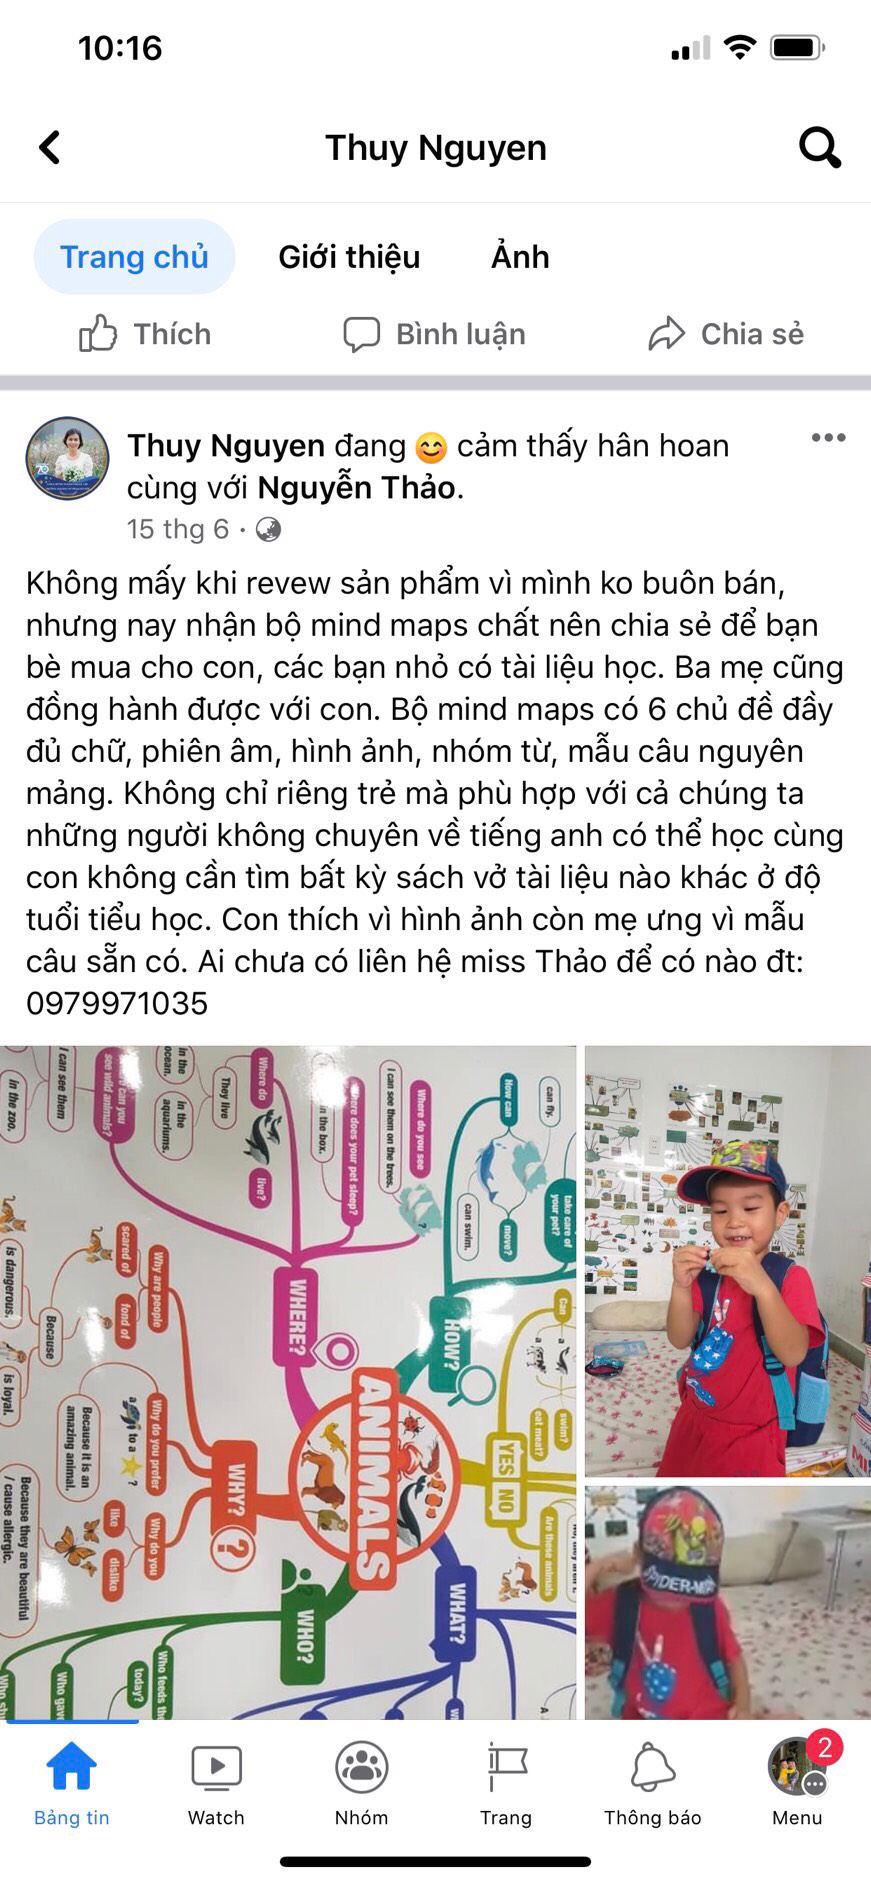 Mind Map Tiếng Anh Trẻ Em Giao Tiếp Tại Nhà - Mindmap cho bé từ 0-12 tuổi